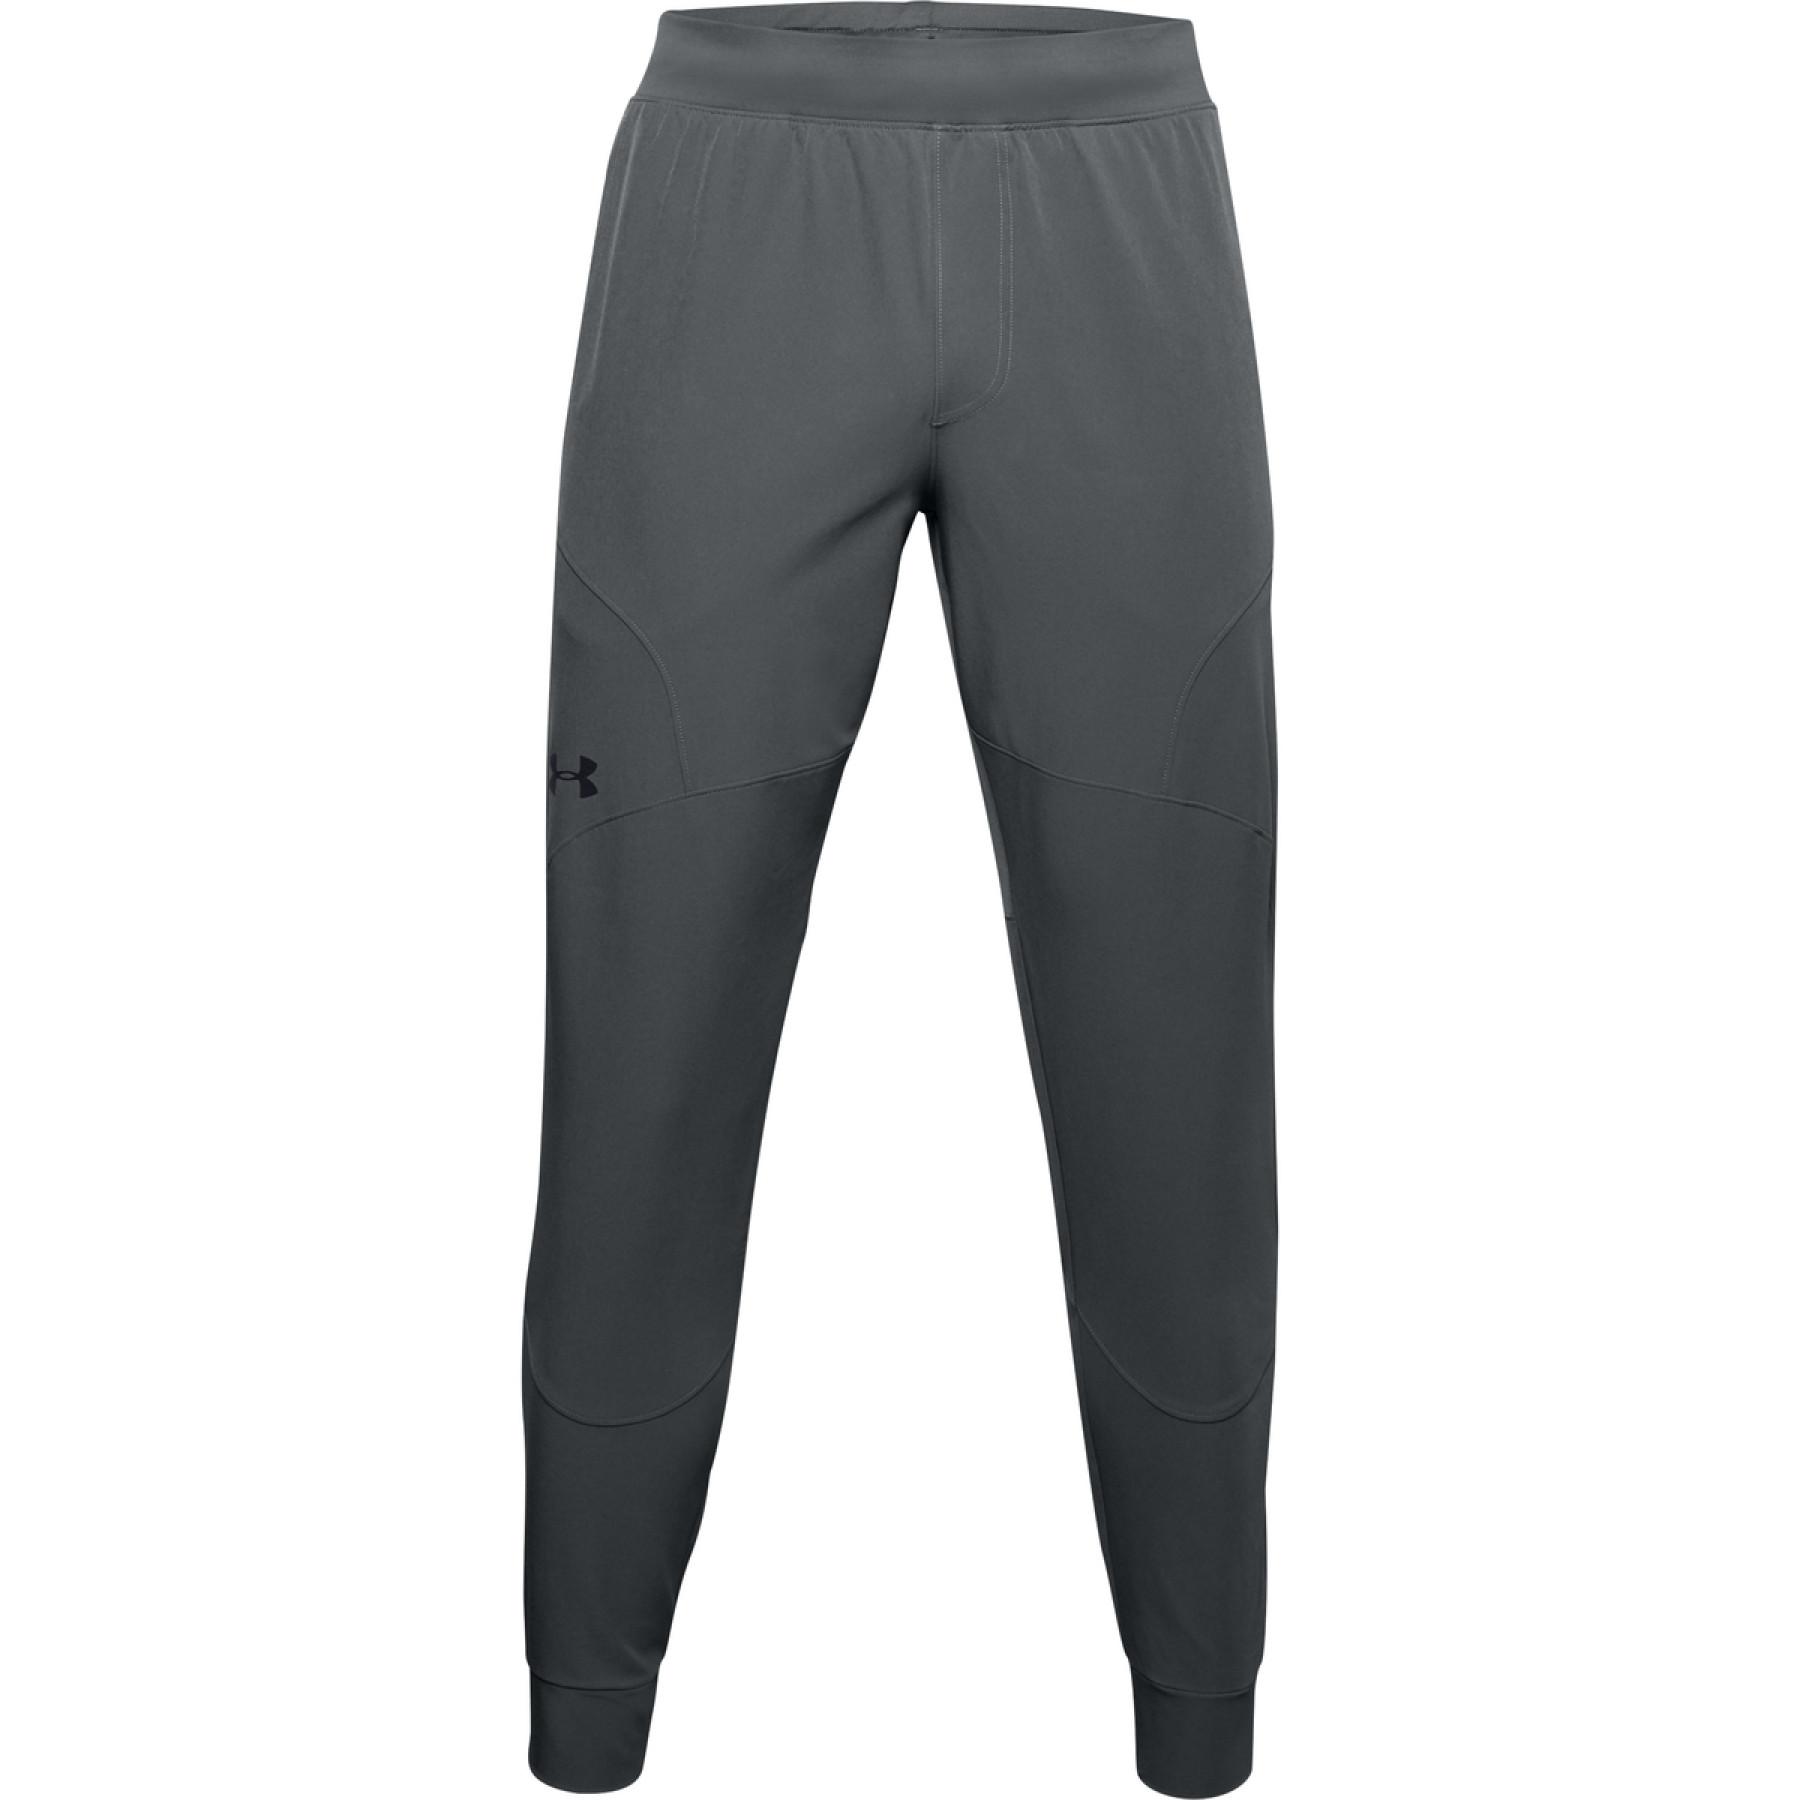 Jogging pants Under Armour Flex Woven - Under Armour - Brands